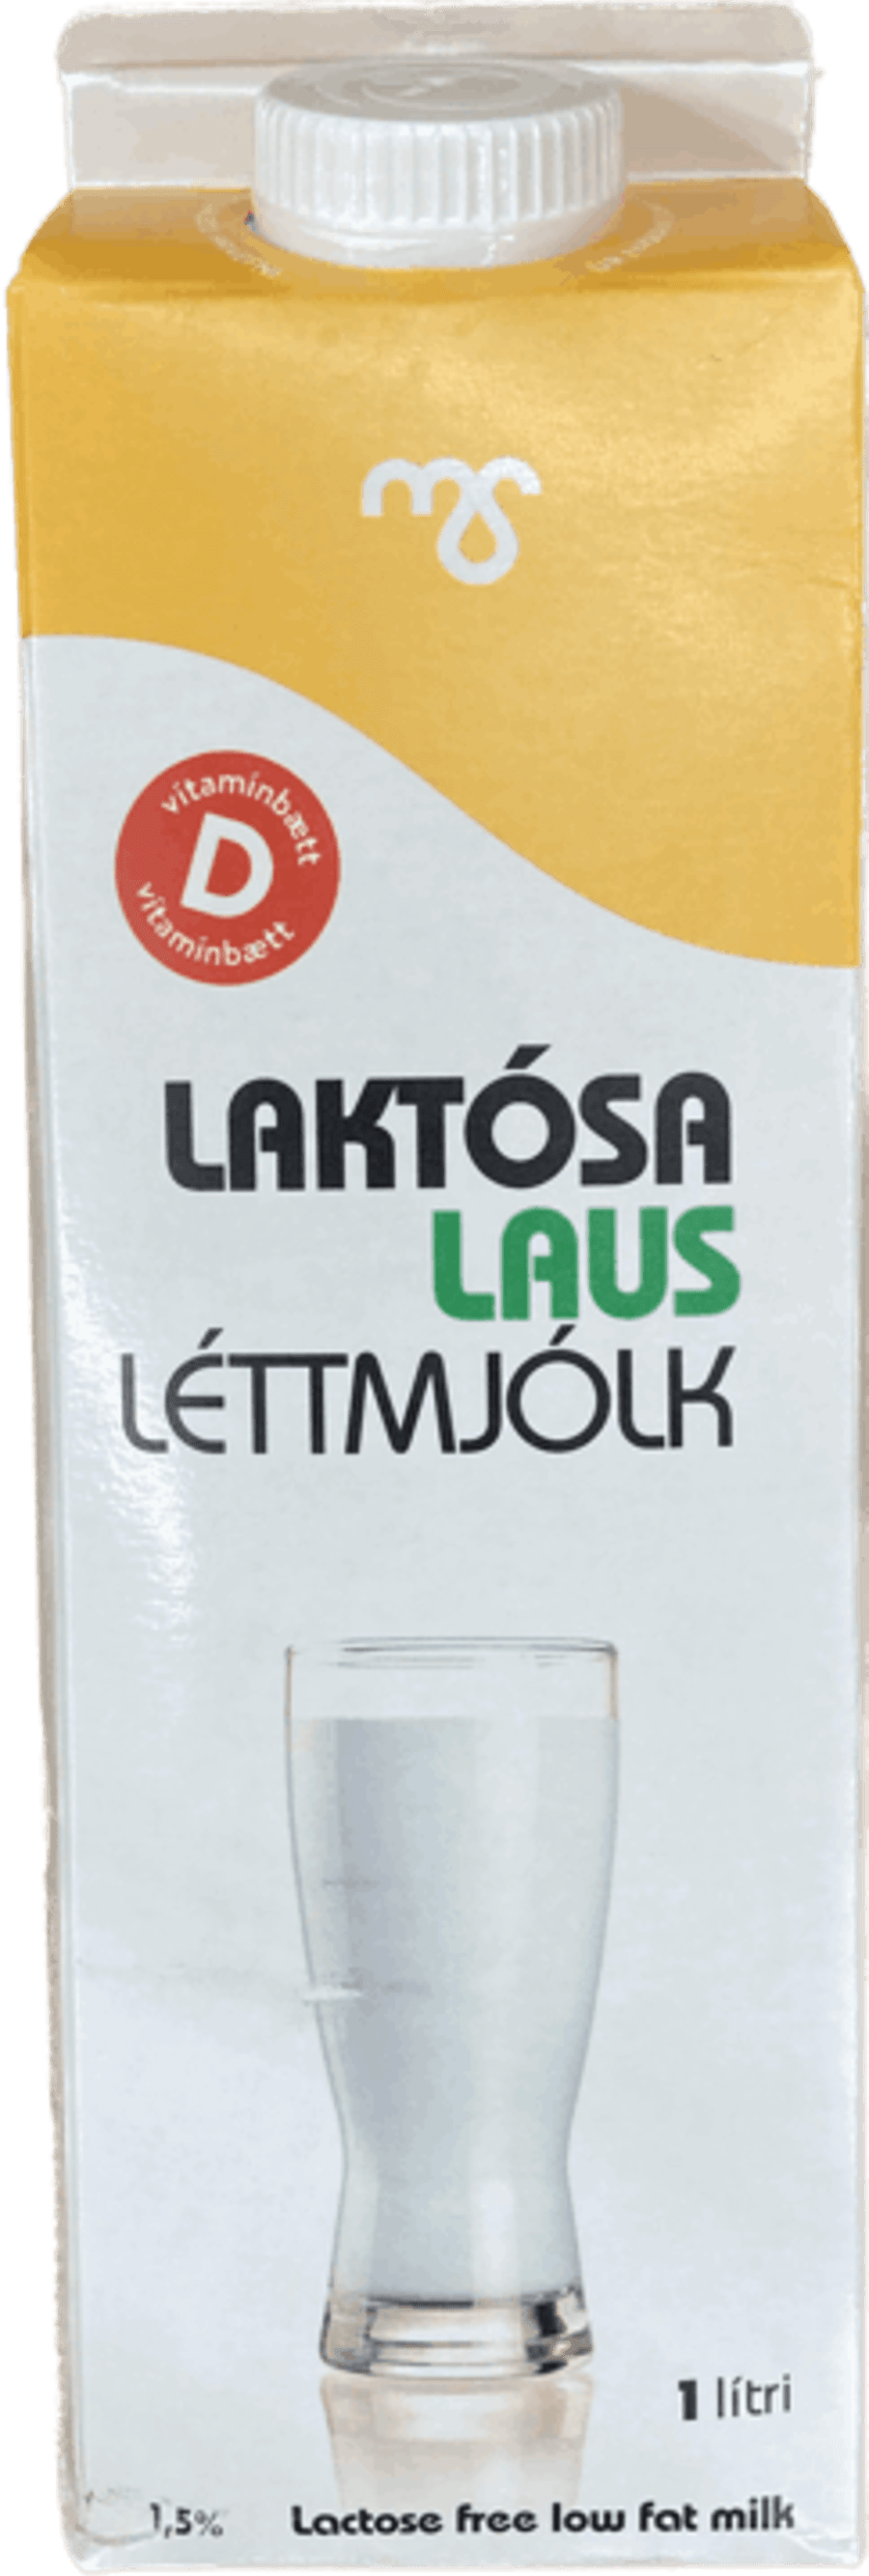 Ms laktósa-frí létt mjólk 1 ltr